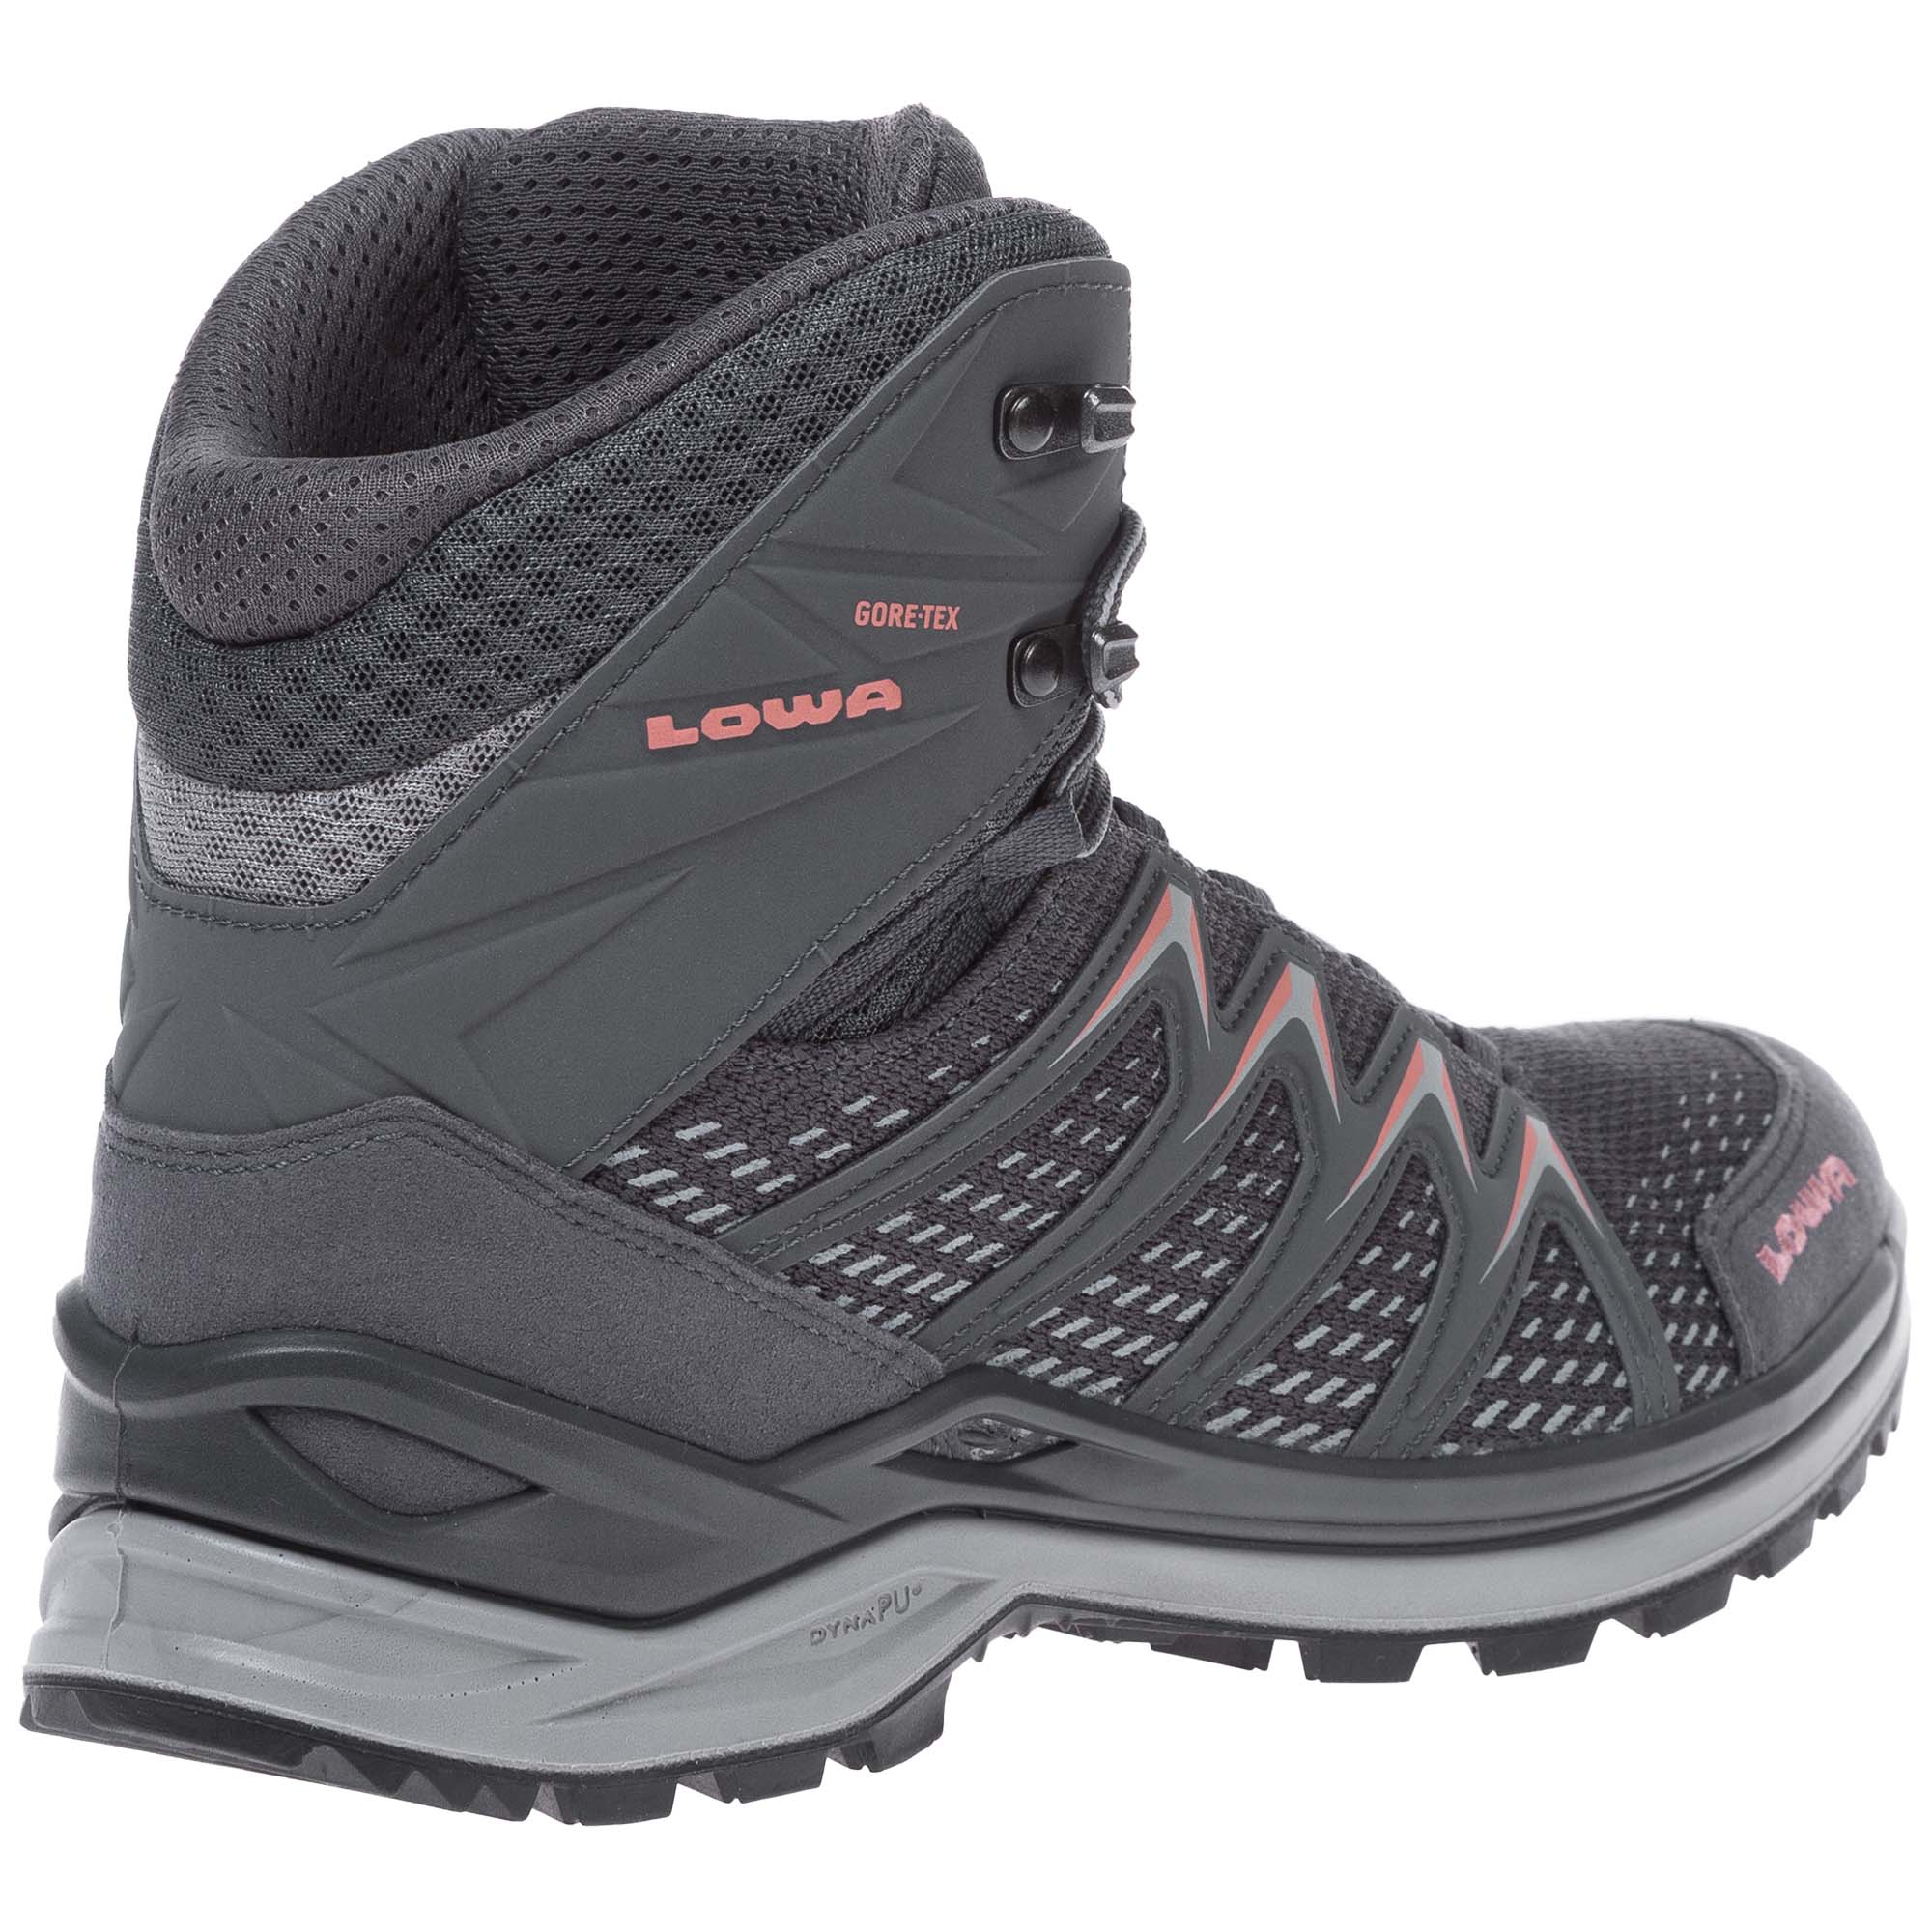 Lowa Innox Pro GTX Mid Women's Hiking Boots